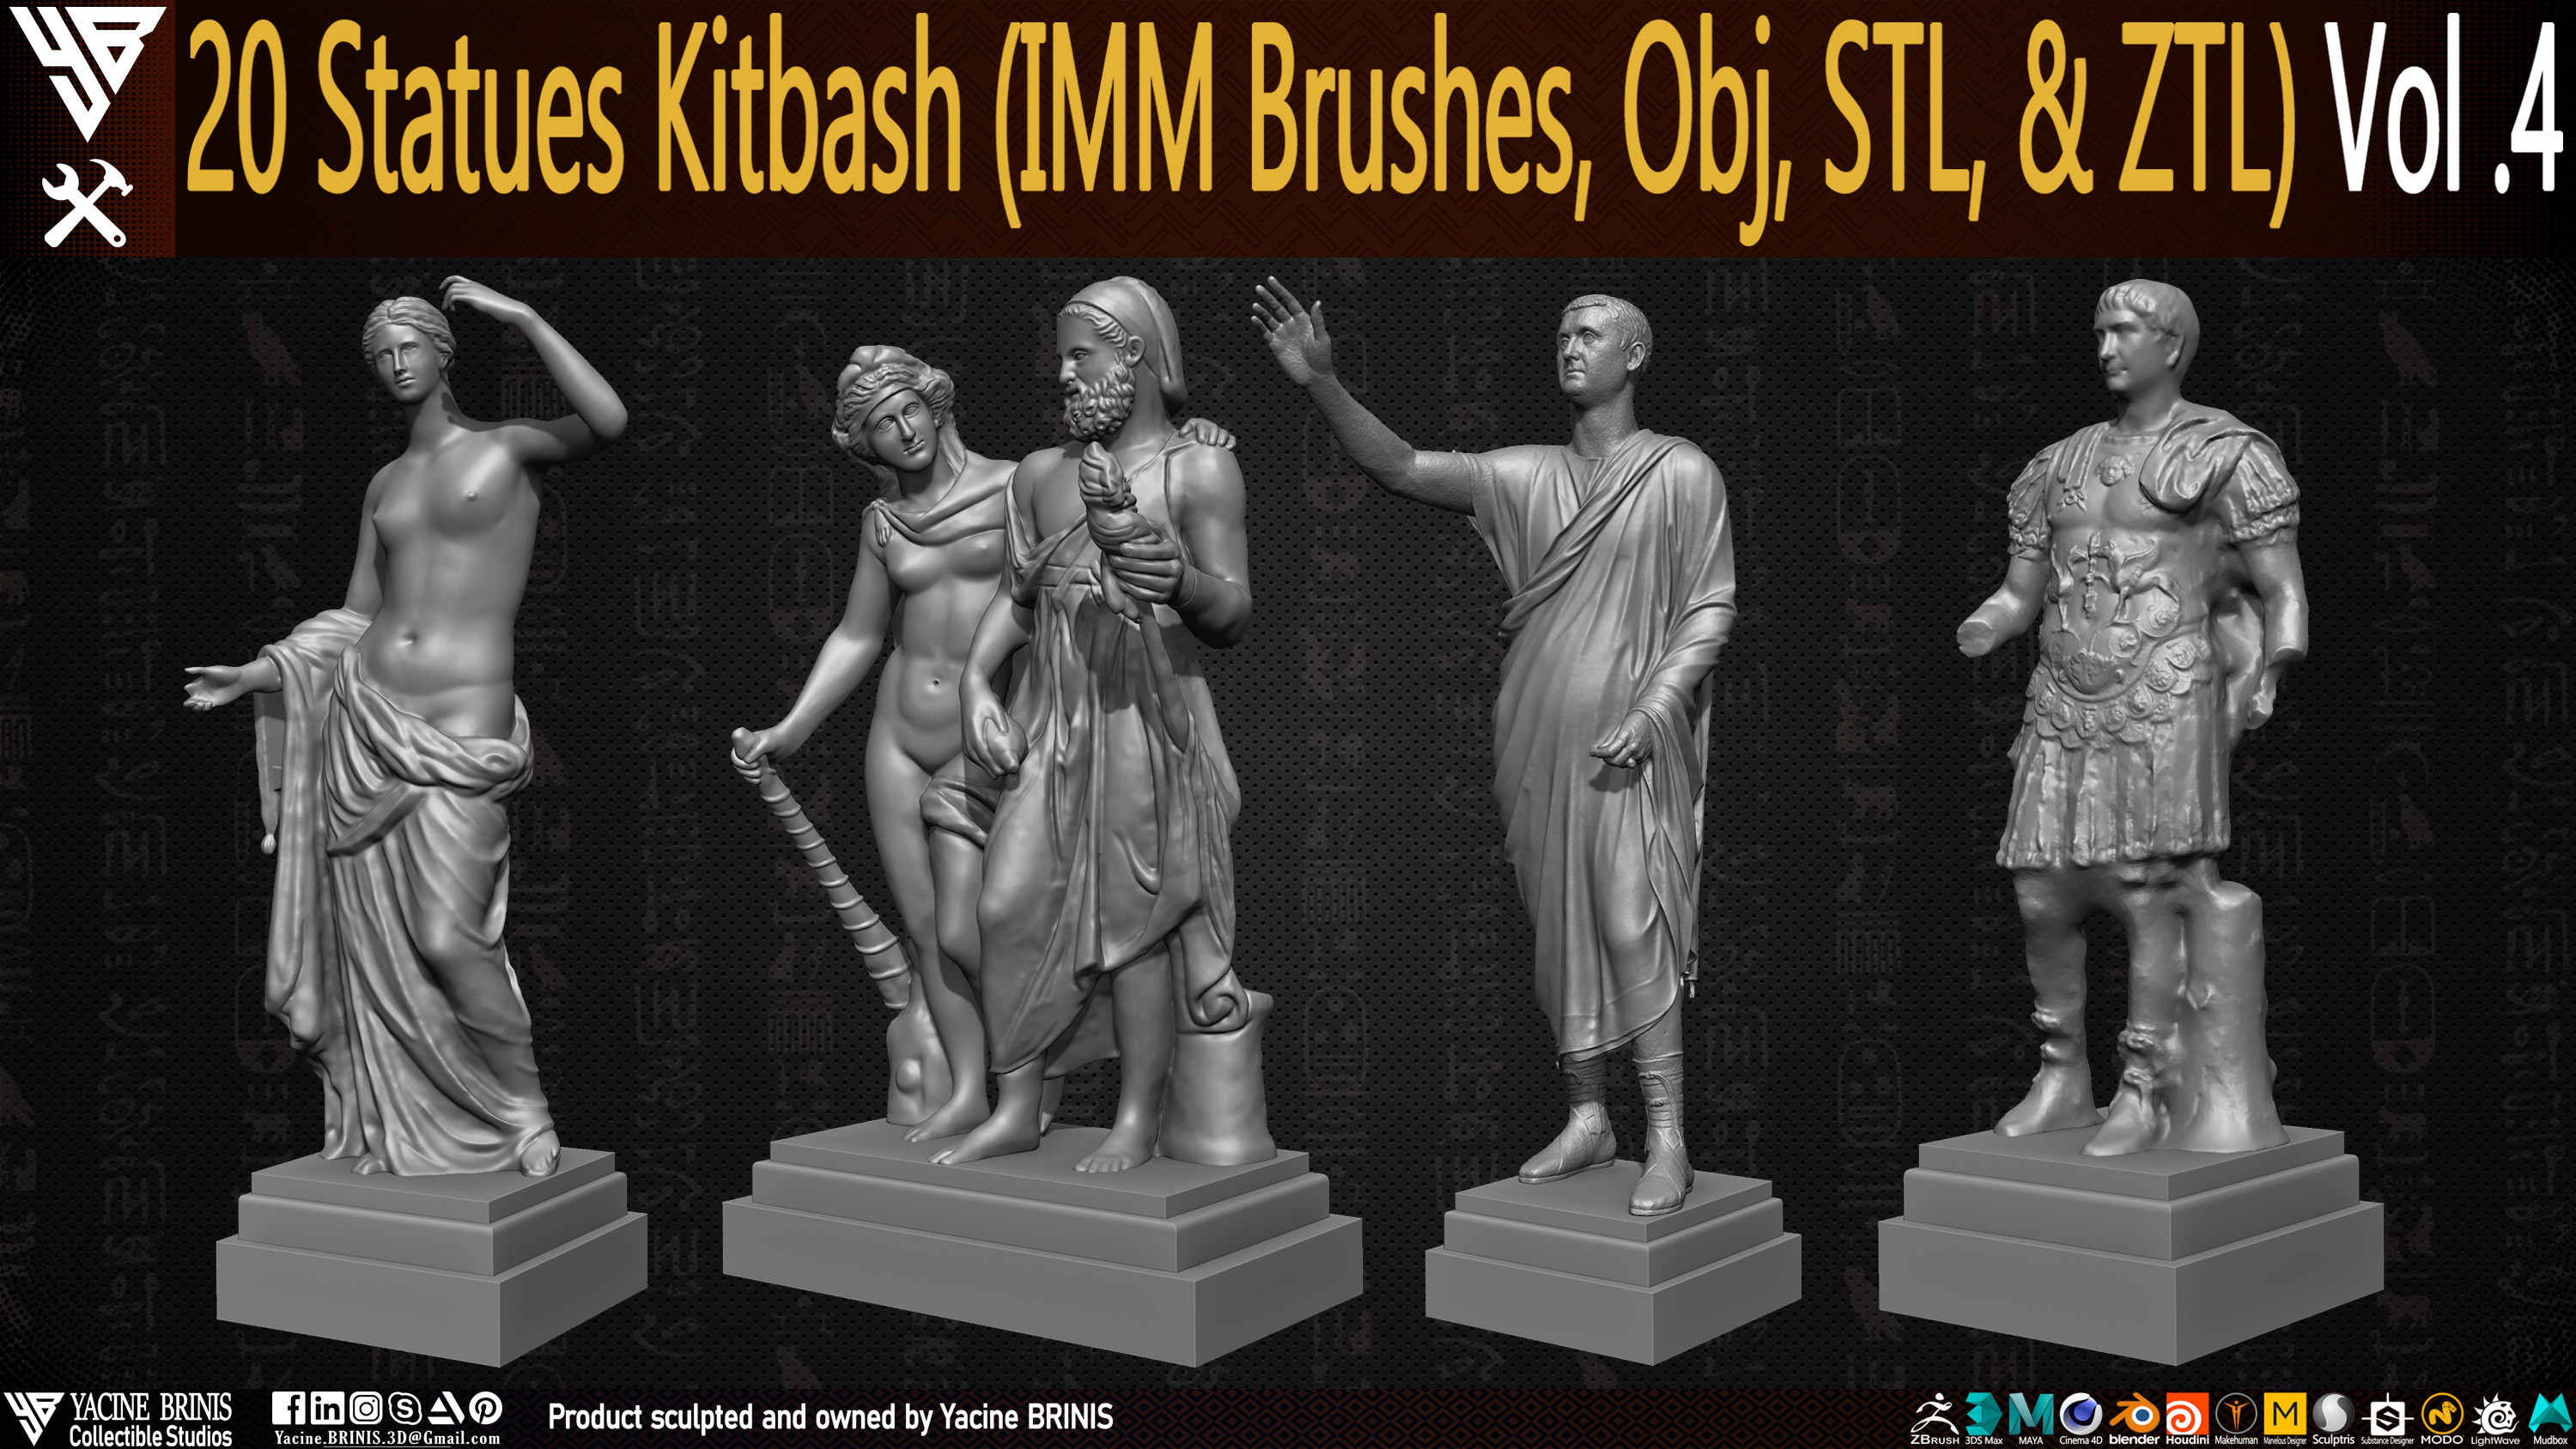 Statues Kitbash by yacine brinis Set 20